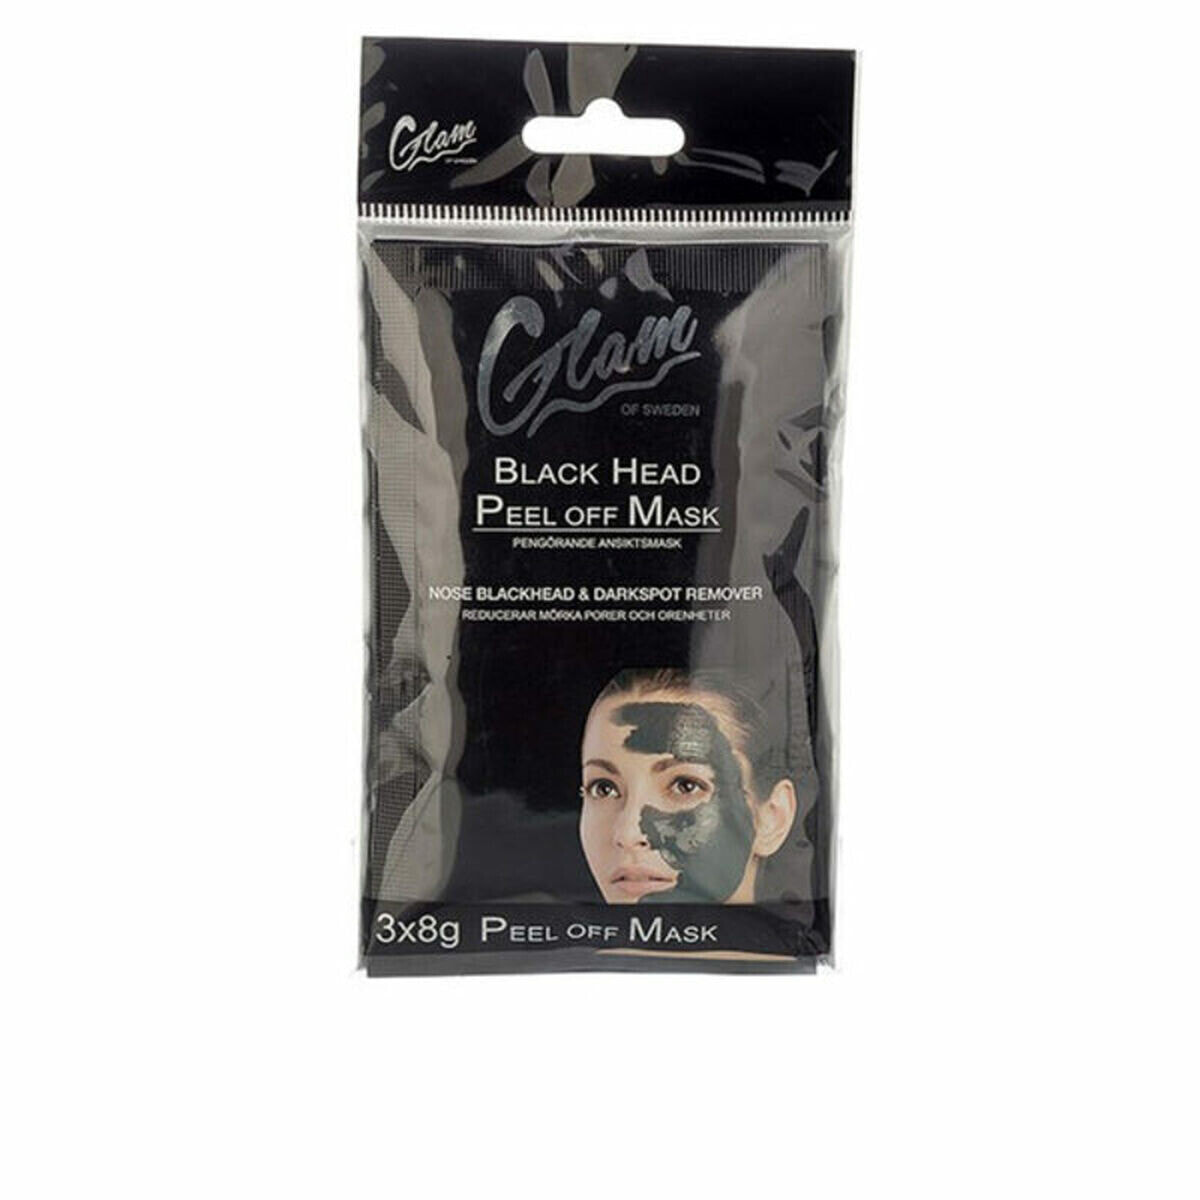 Очищающая маска Glam Of Sweden Mask 8 g (3 x 8 g )